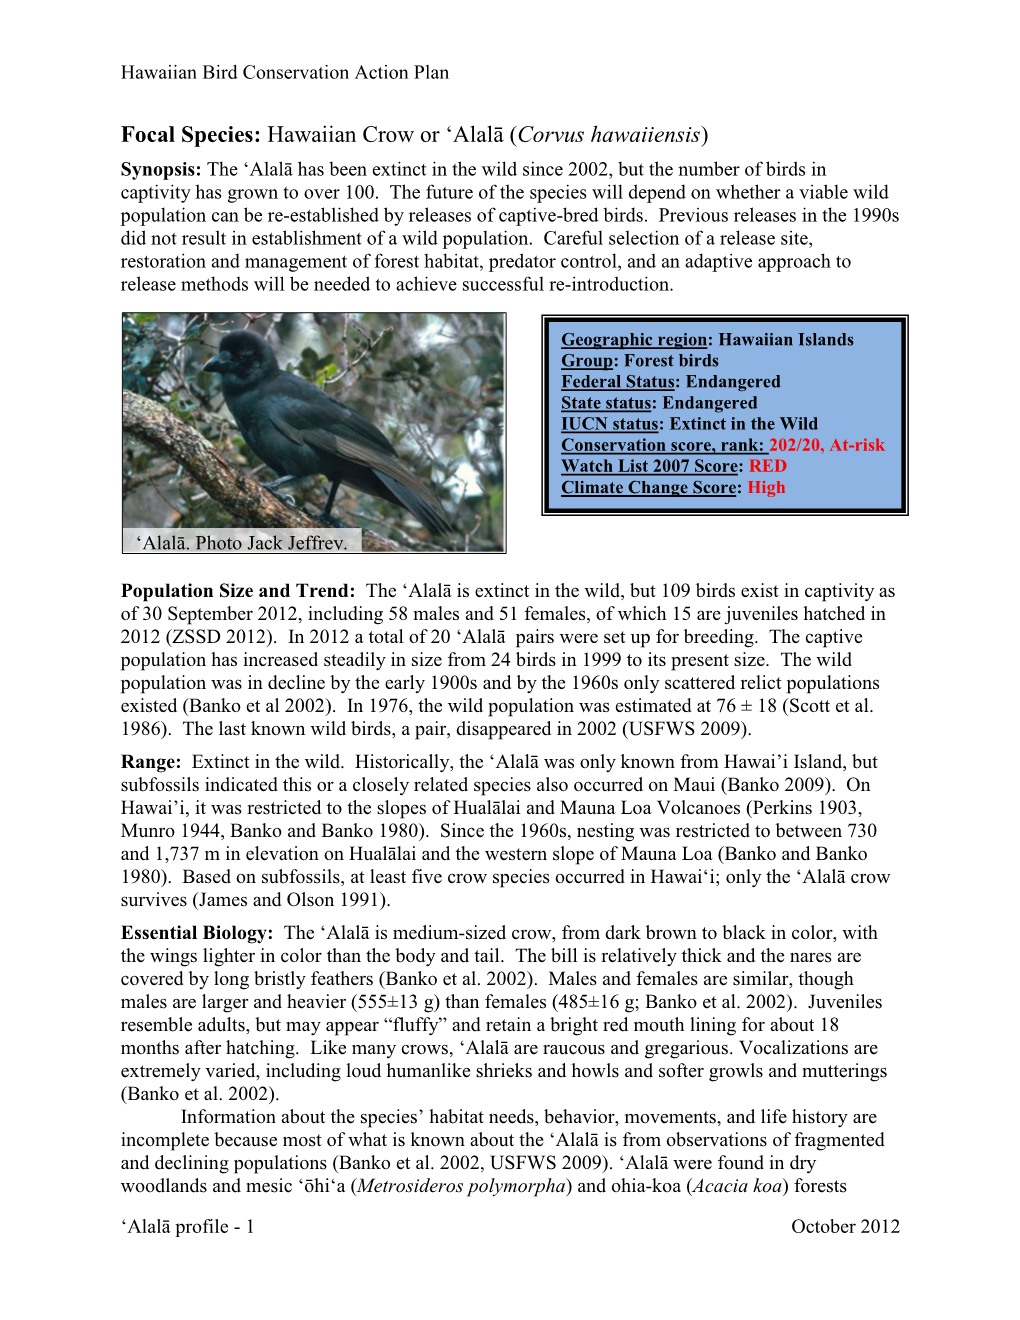 Focal Species: Hawaiian Crow Or 'Alalā (Corvus Hawaiiensis)